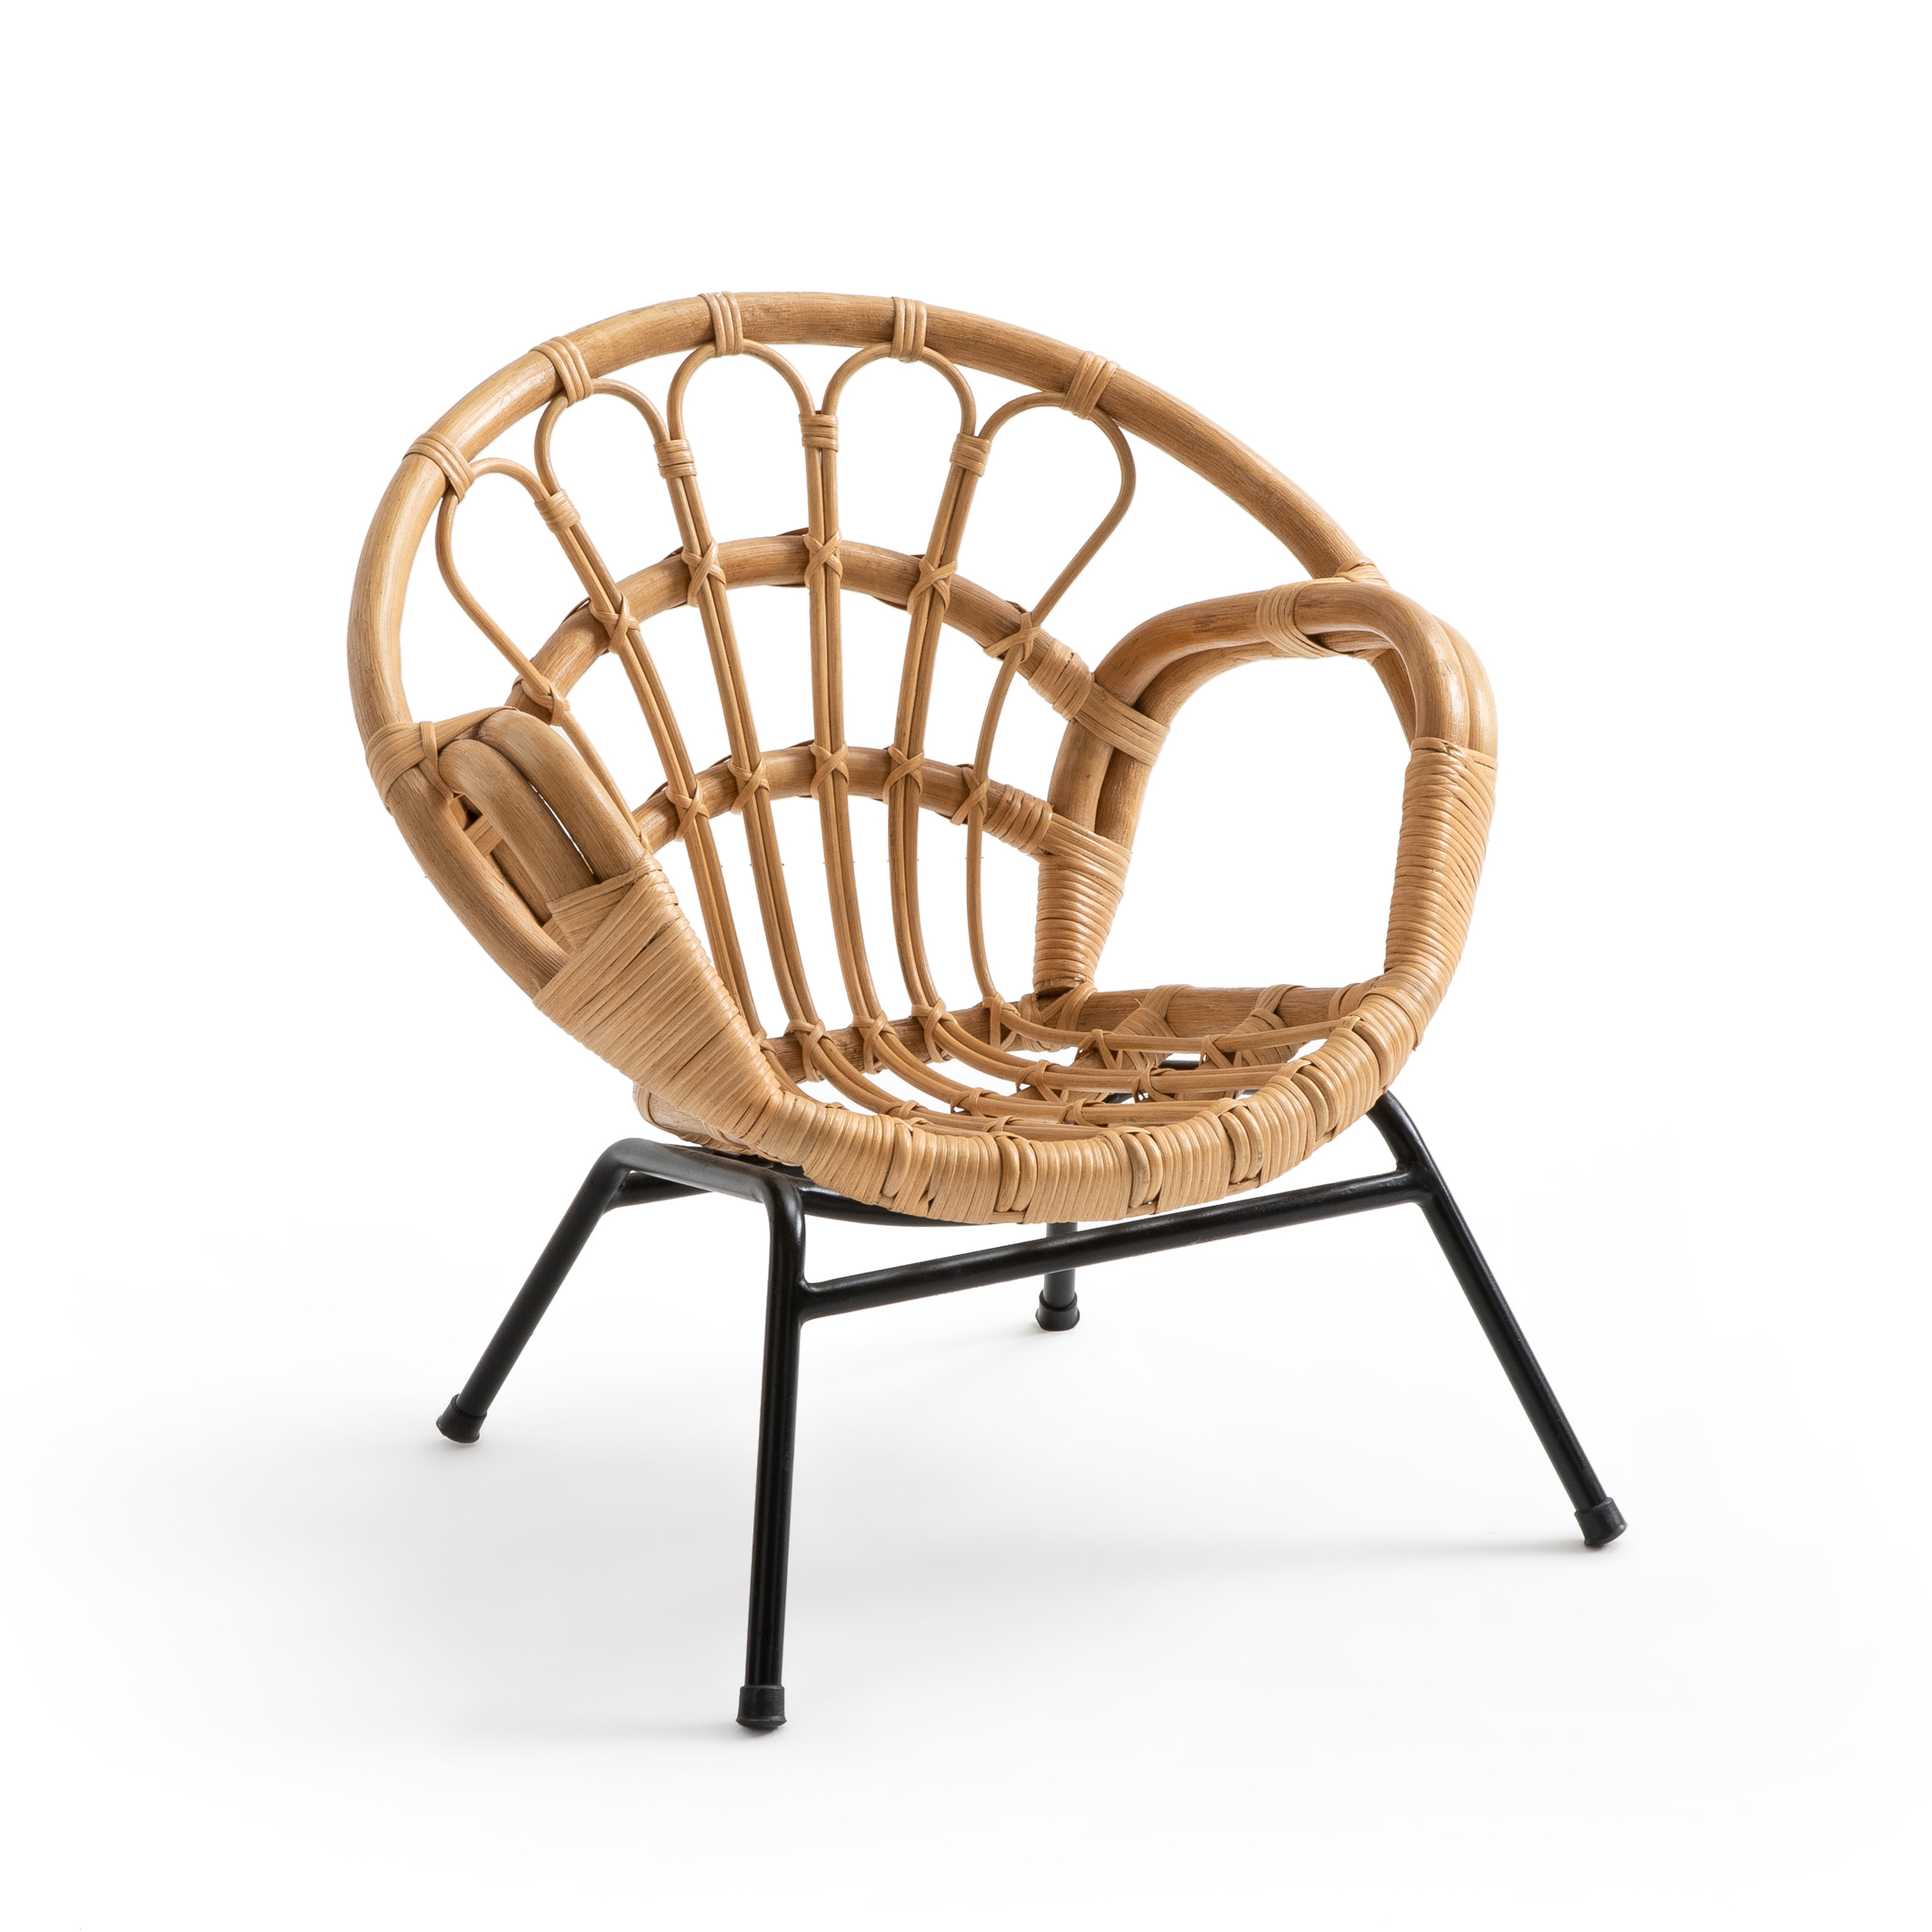 Redoute natural rattan La Interieurs vintage-style La | Malu armchair Redoute child\'s